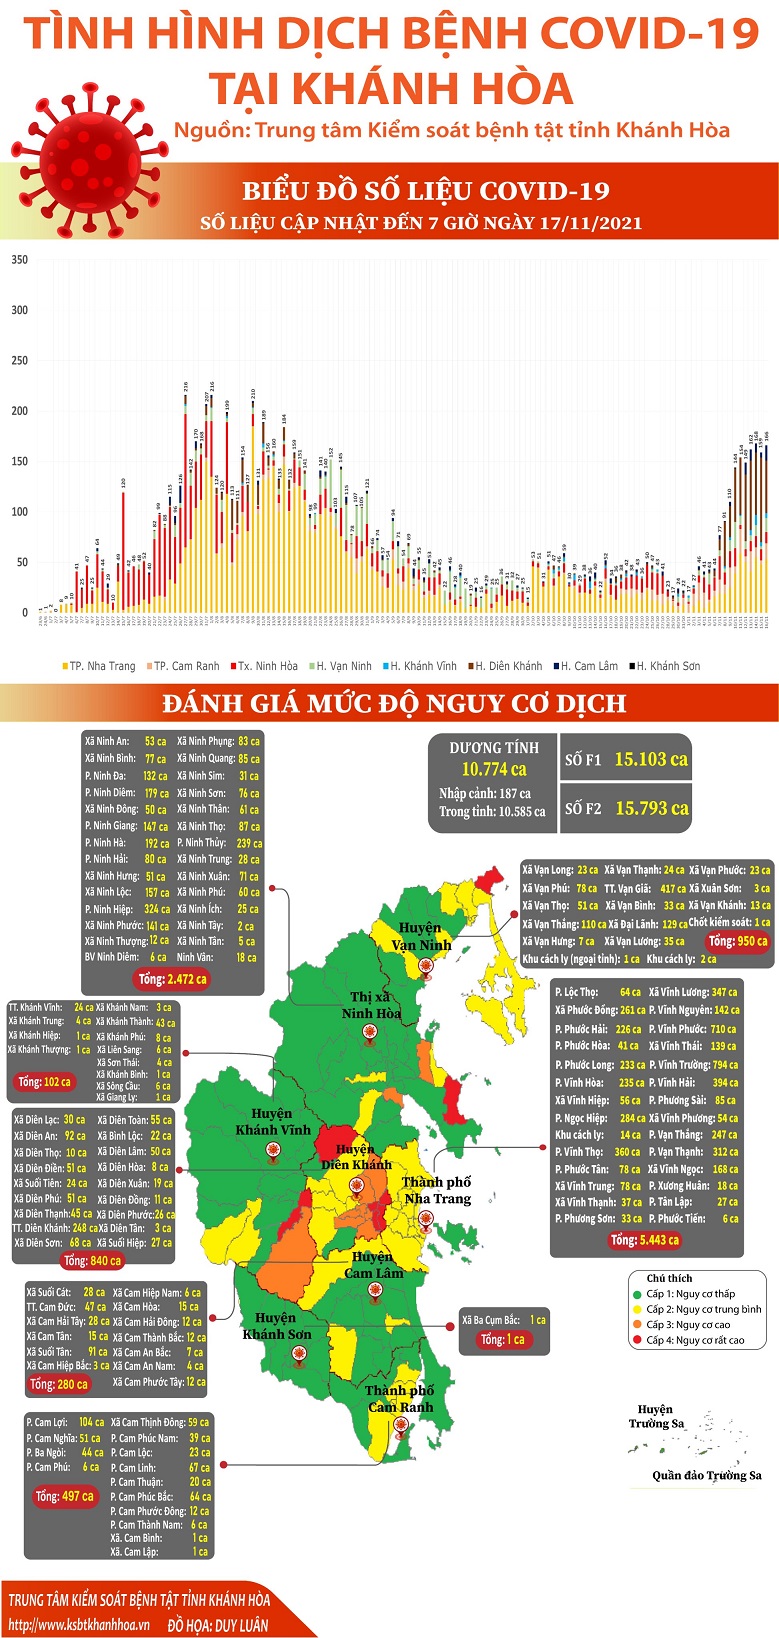 Biểu đồ tình hình dịch bệnh COVID-19 tại Khánh Hòa (Cập nhật đến 07 giờ 00 ngày 17/11/2021)